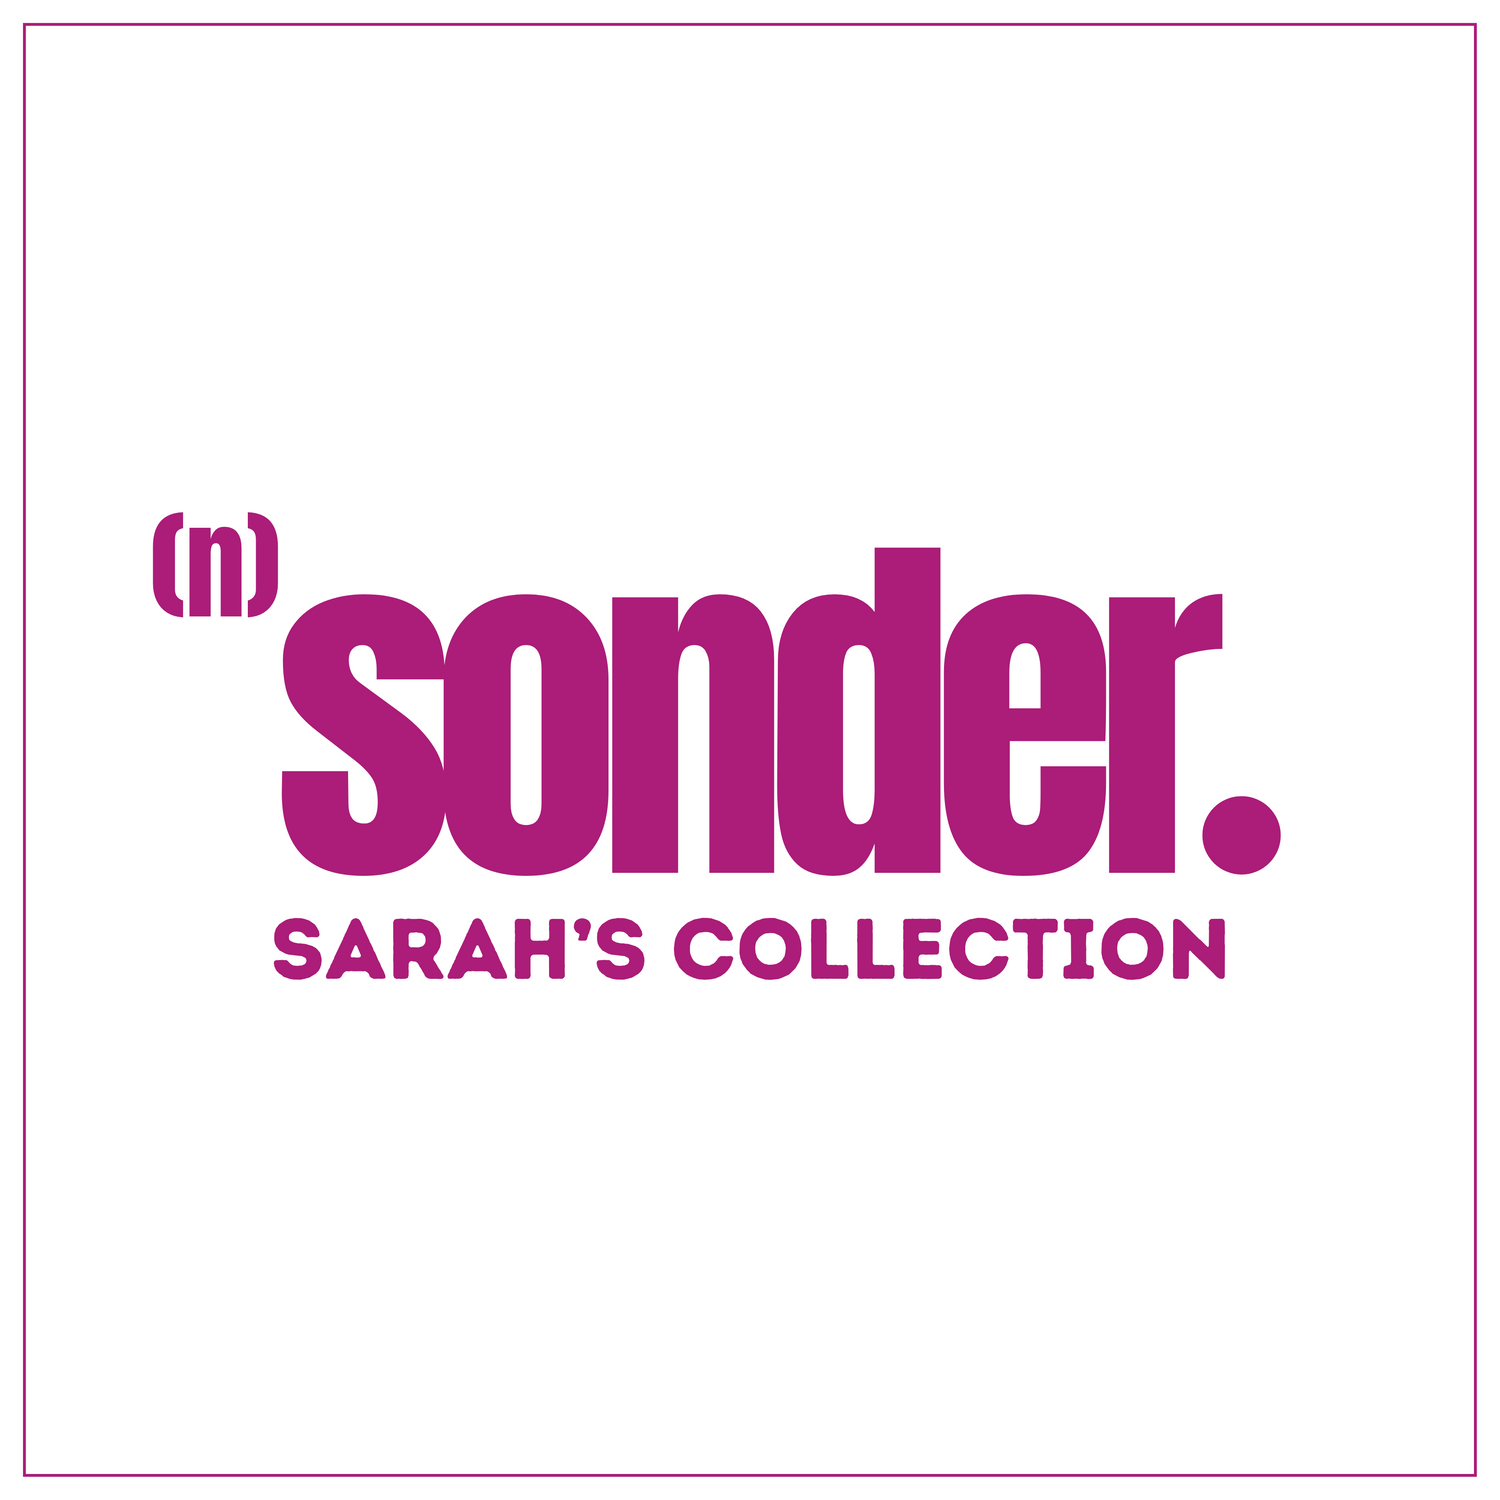 Sarah's Collection